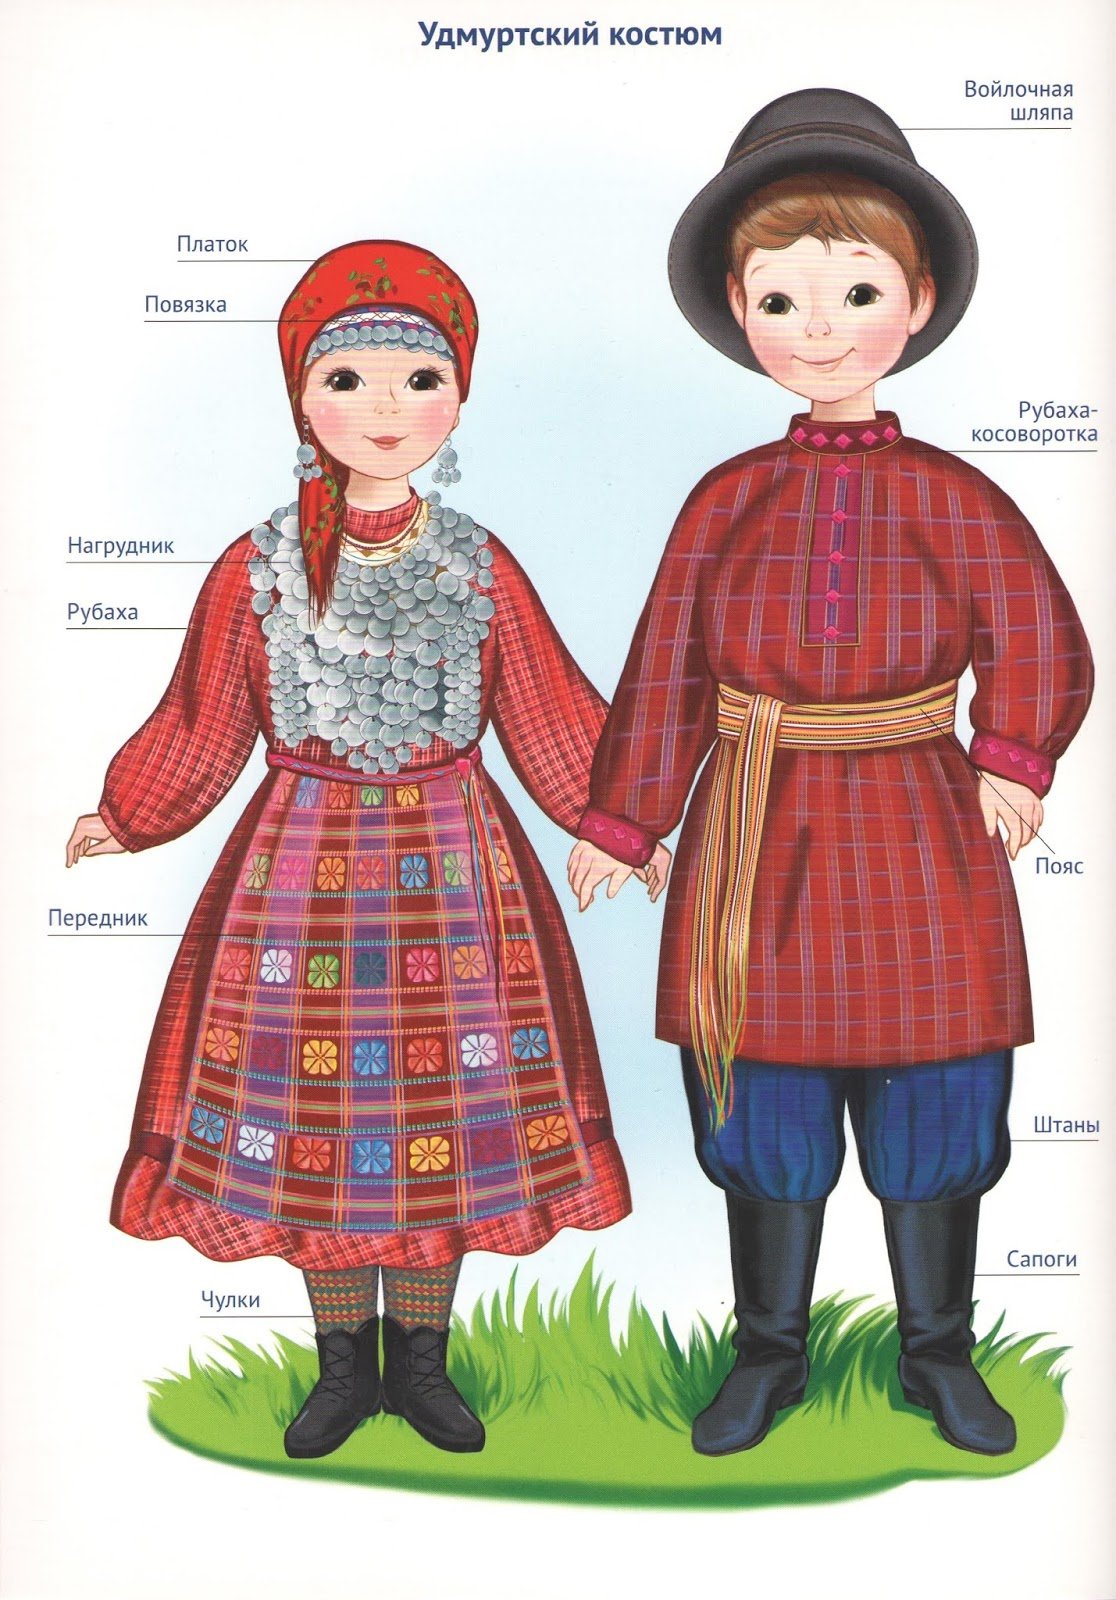 Национальные костюмы народов Поволжья удмурты